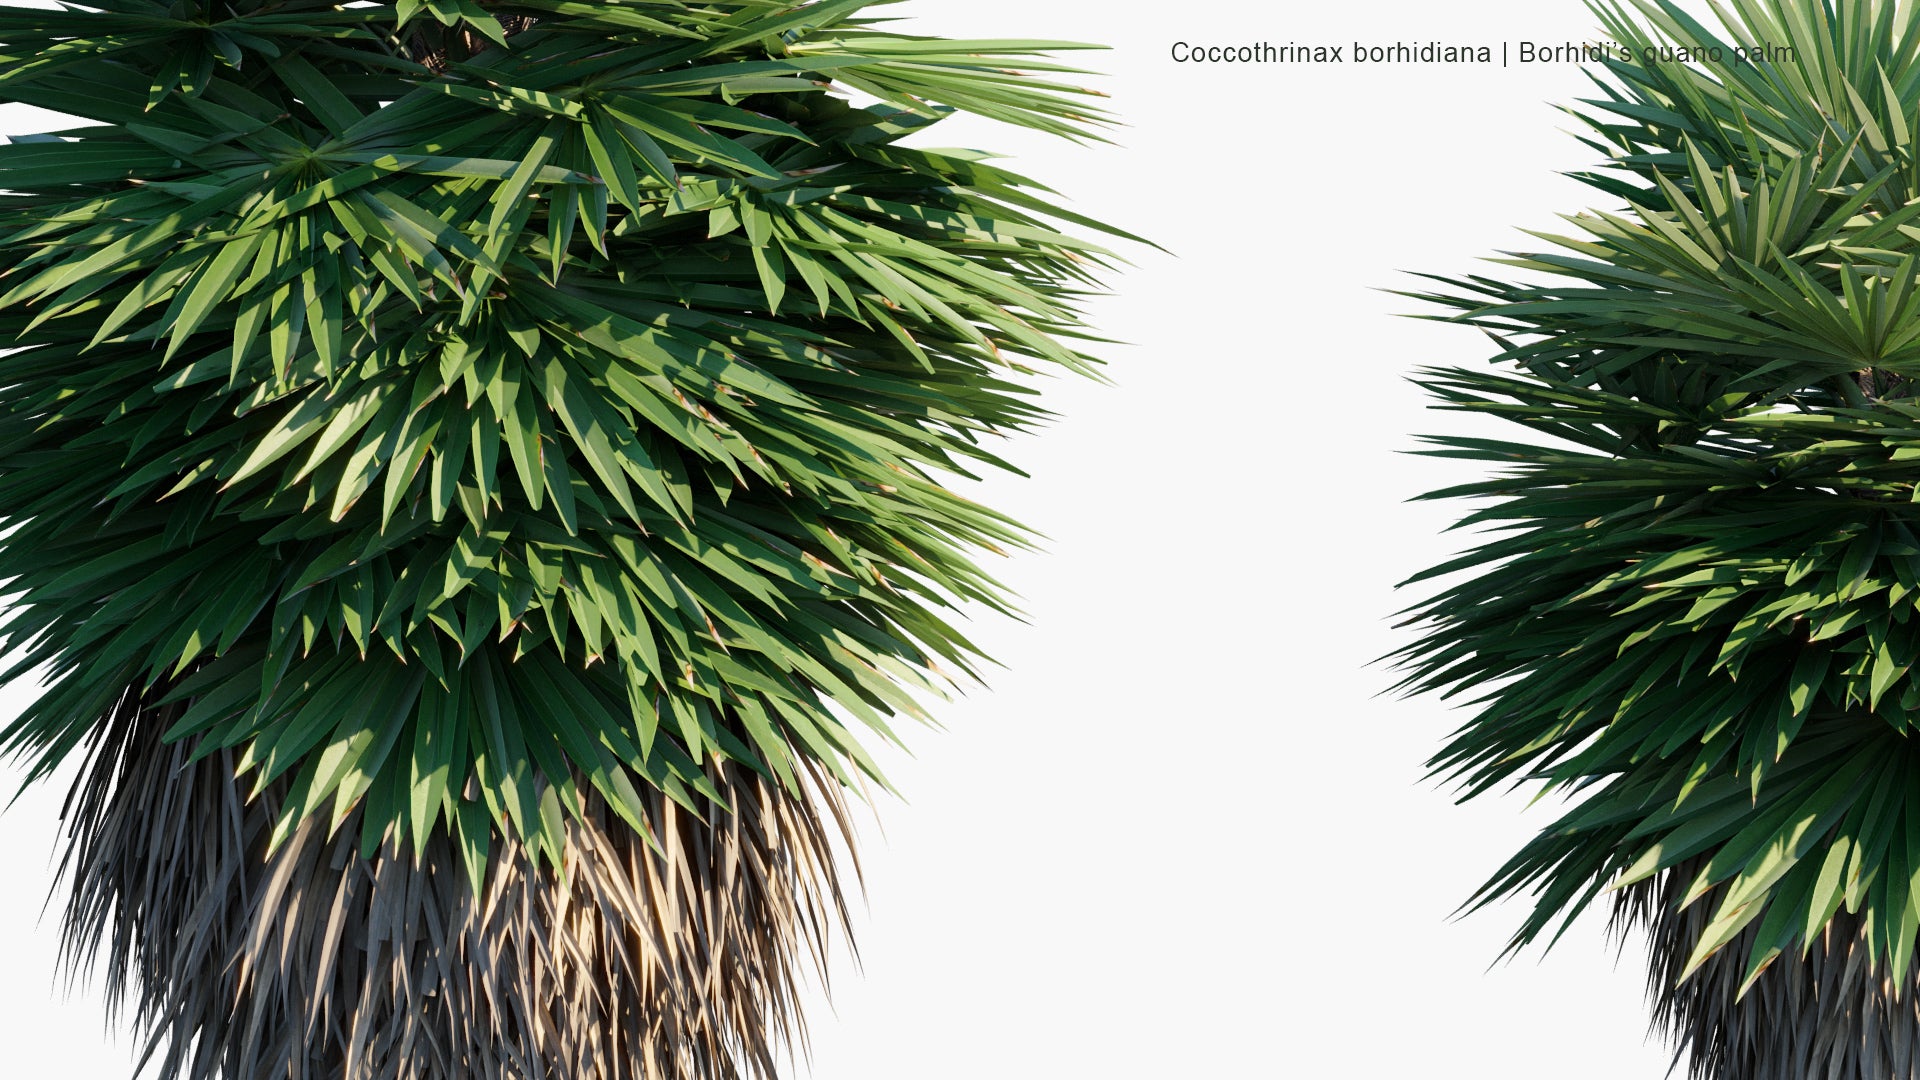 Coccothrinax Borhidiana - Guano, Borhidi's Guano Palm (3D Model)